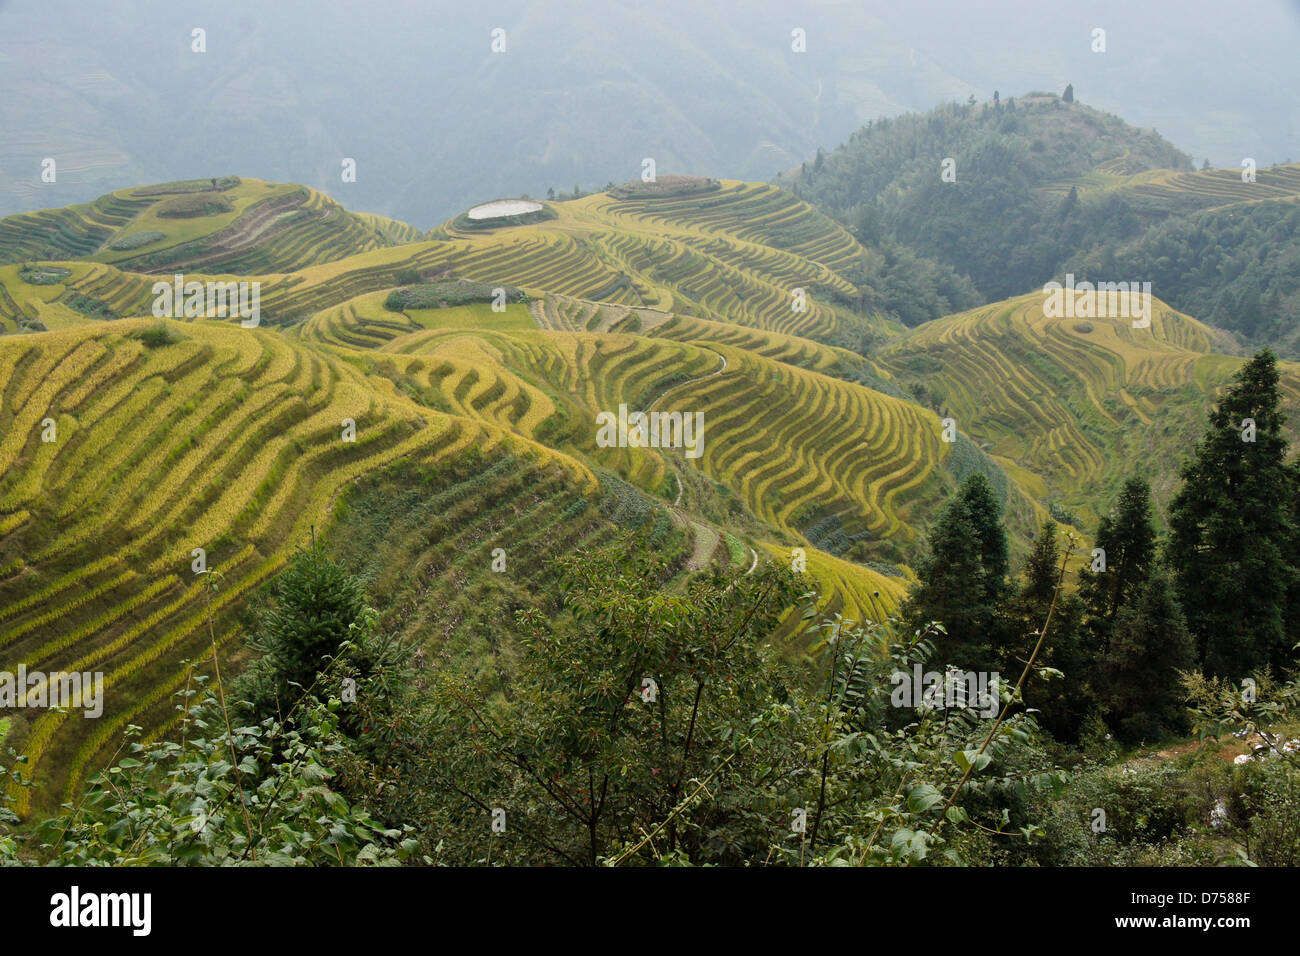 Les rizières en terrasse de Longsheng, Guangxi, Chine Banque D'Images